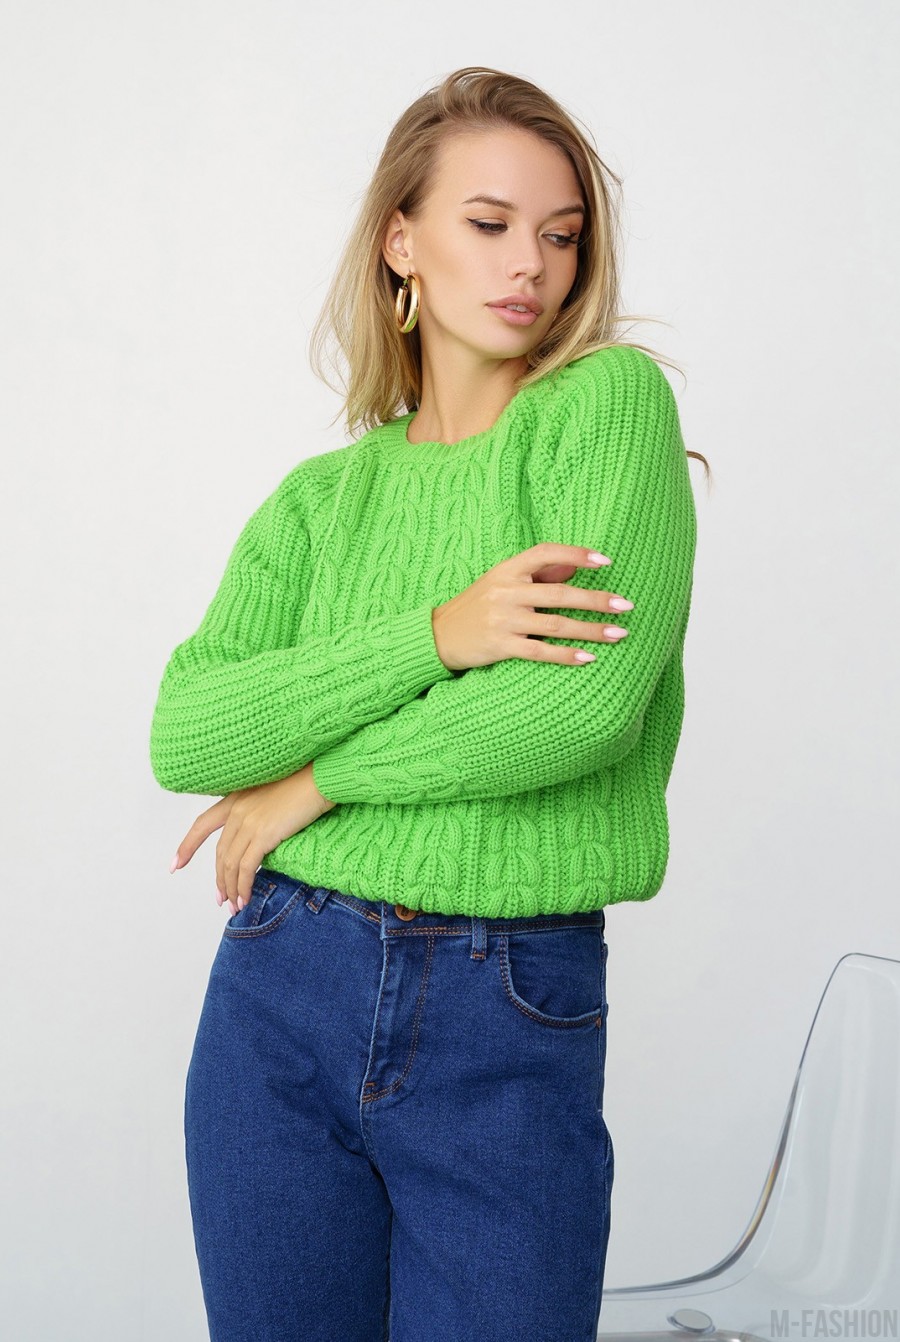 Салатовый вязаный свитер с аранами - Фото 1